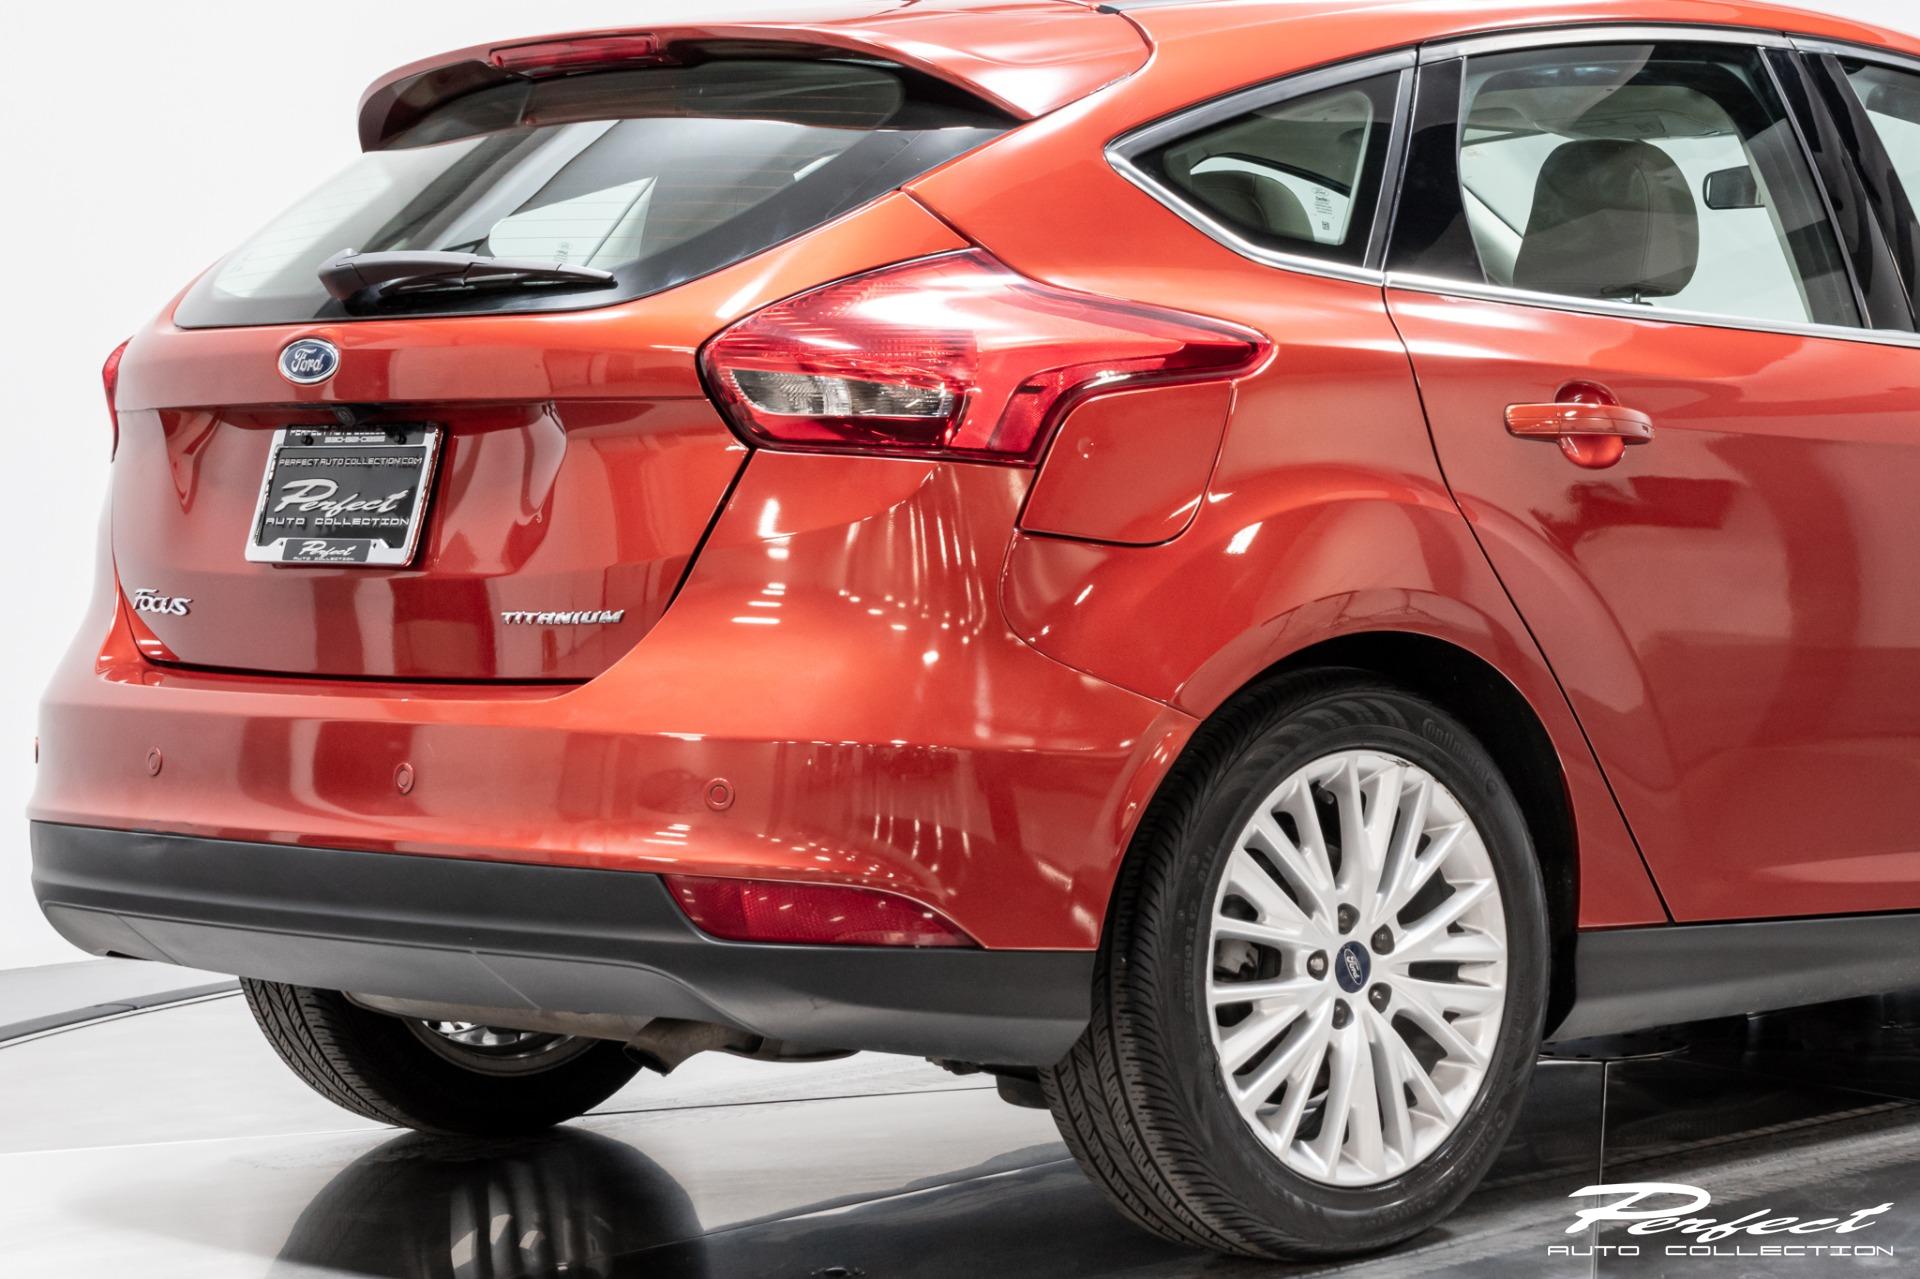 Used 2018 Ford Focus Titanium For Sale ($11,993) | Perfect Auto ...